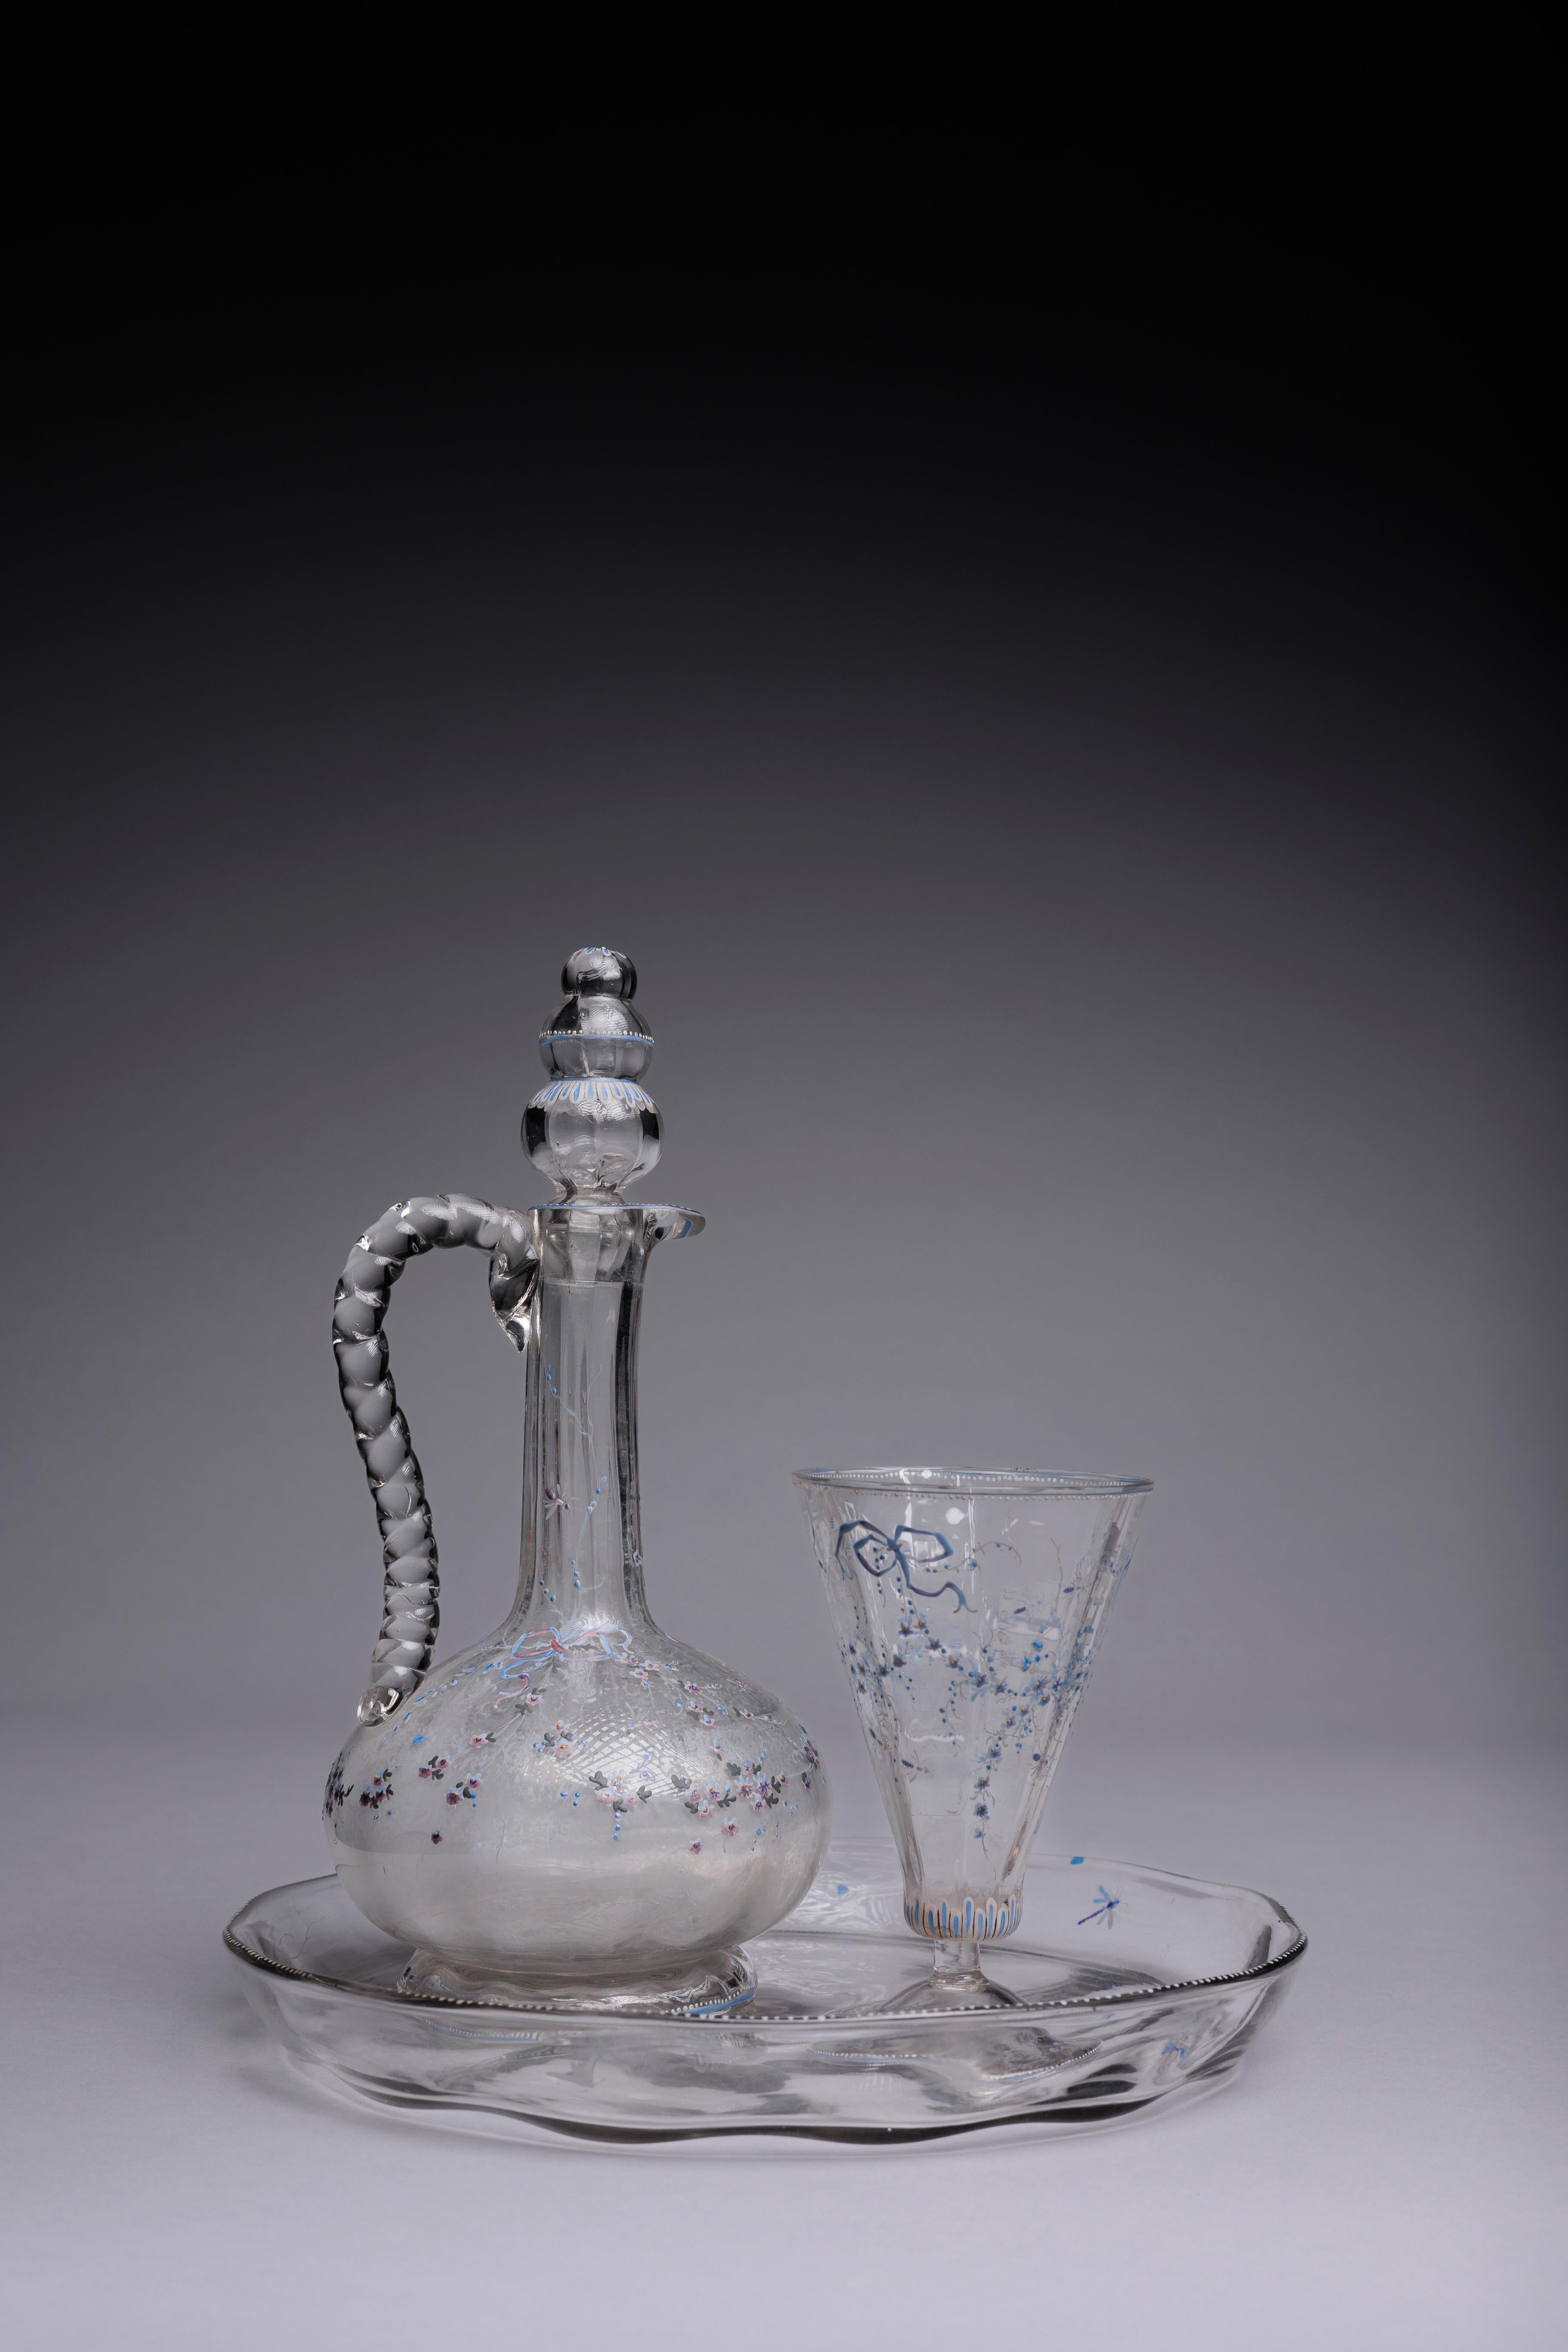 Un ensemble de carafes en verre français d'une grande délicatesse, fabriqué par Emile Galle à la fin du 19ème siècle, décoré en émaux de rubans et de fleurs dans une charmante palette de lavande et de pervenche.

Ce service de verres Galle comprend